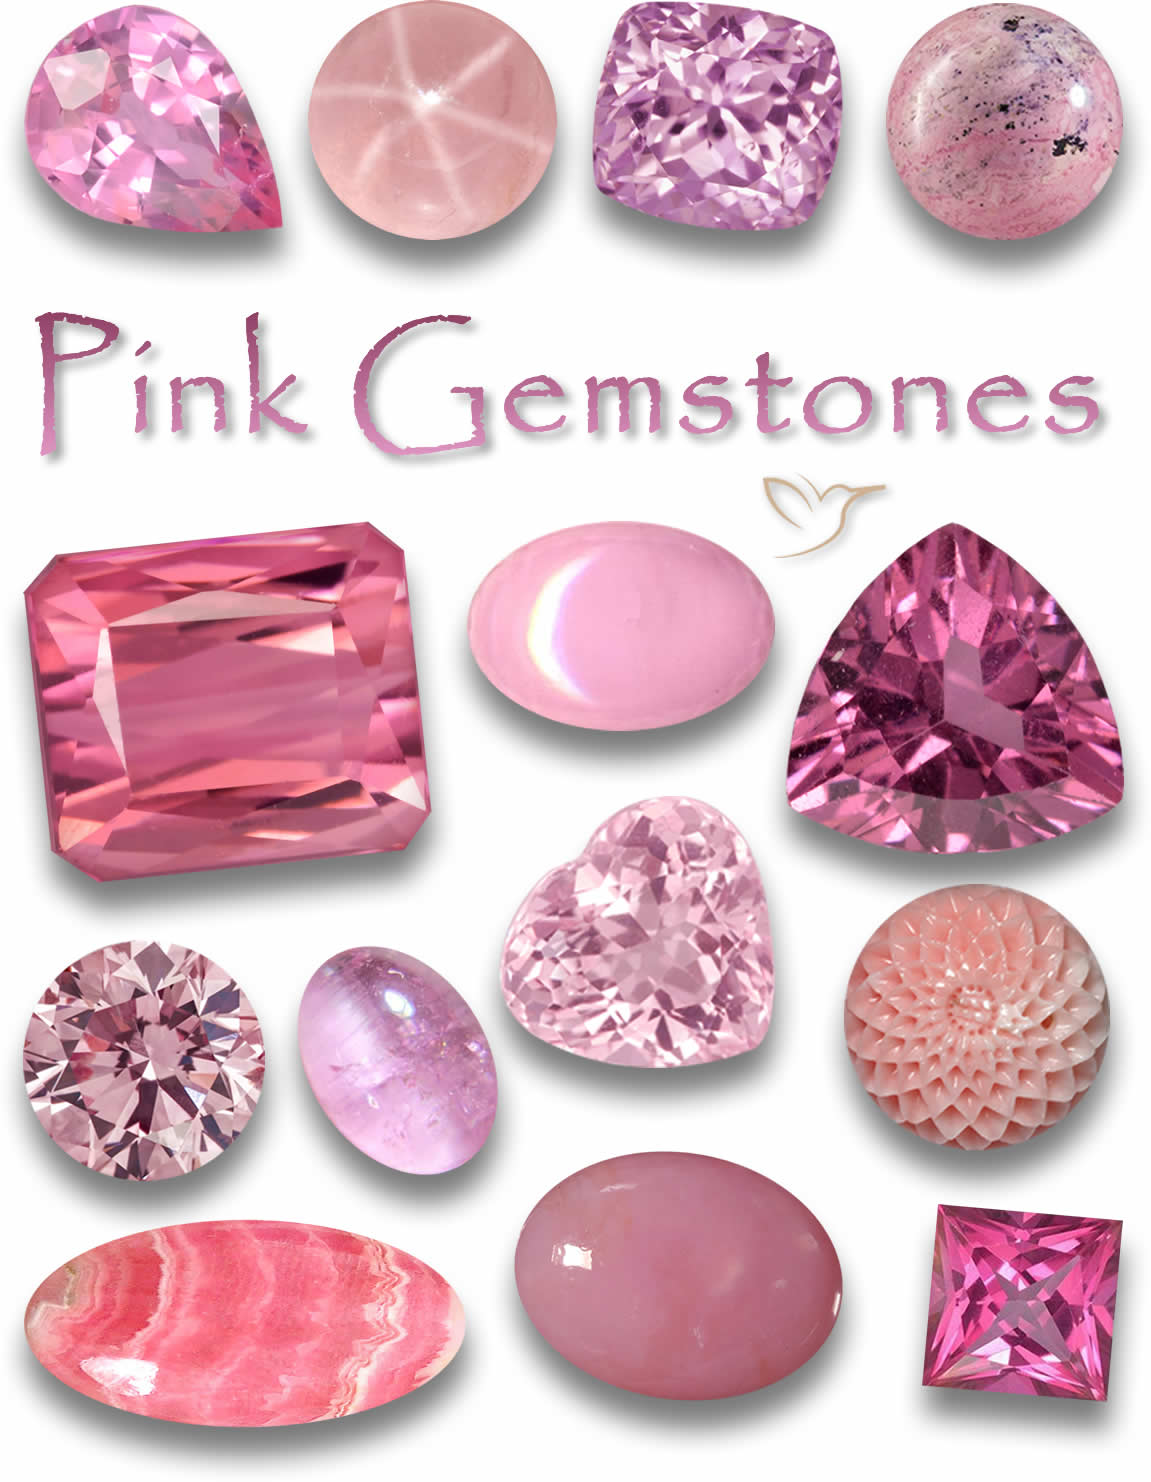 Pietre preziose rosa - Elenco delle pietre rosa con immagini e grafici